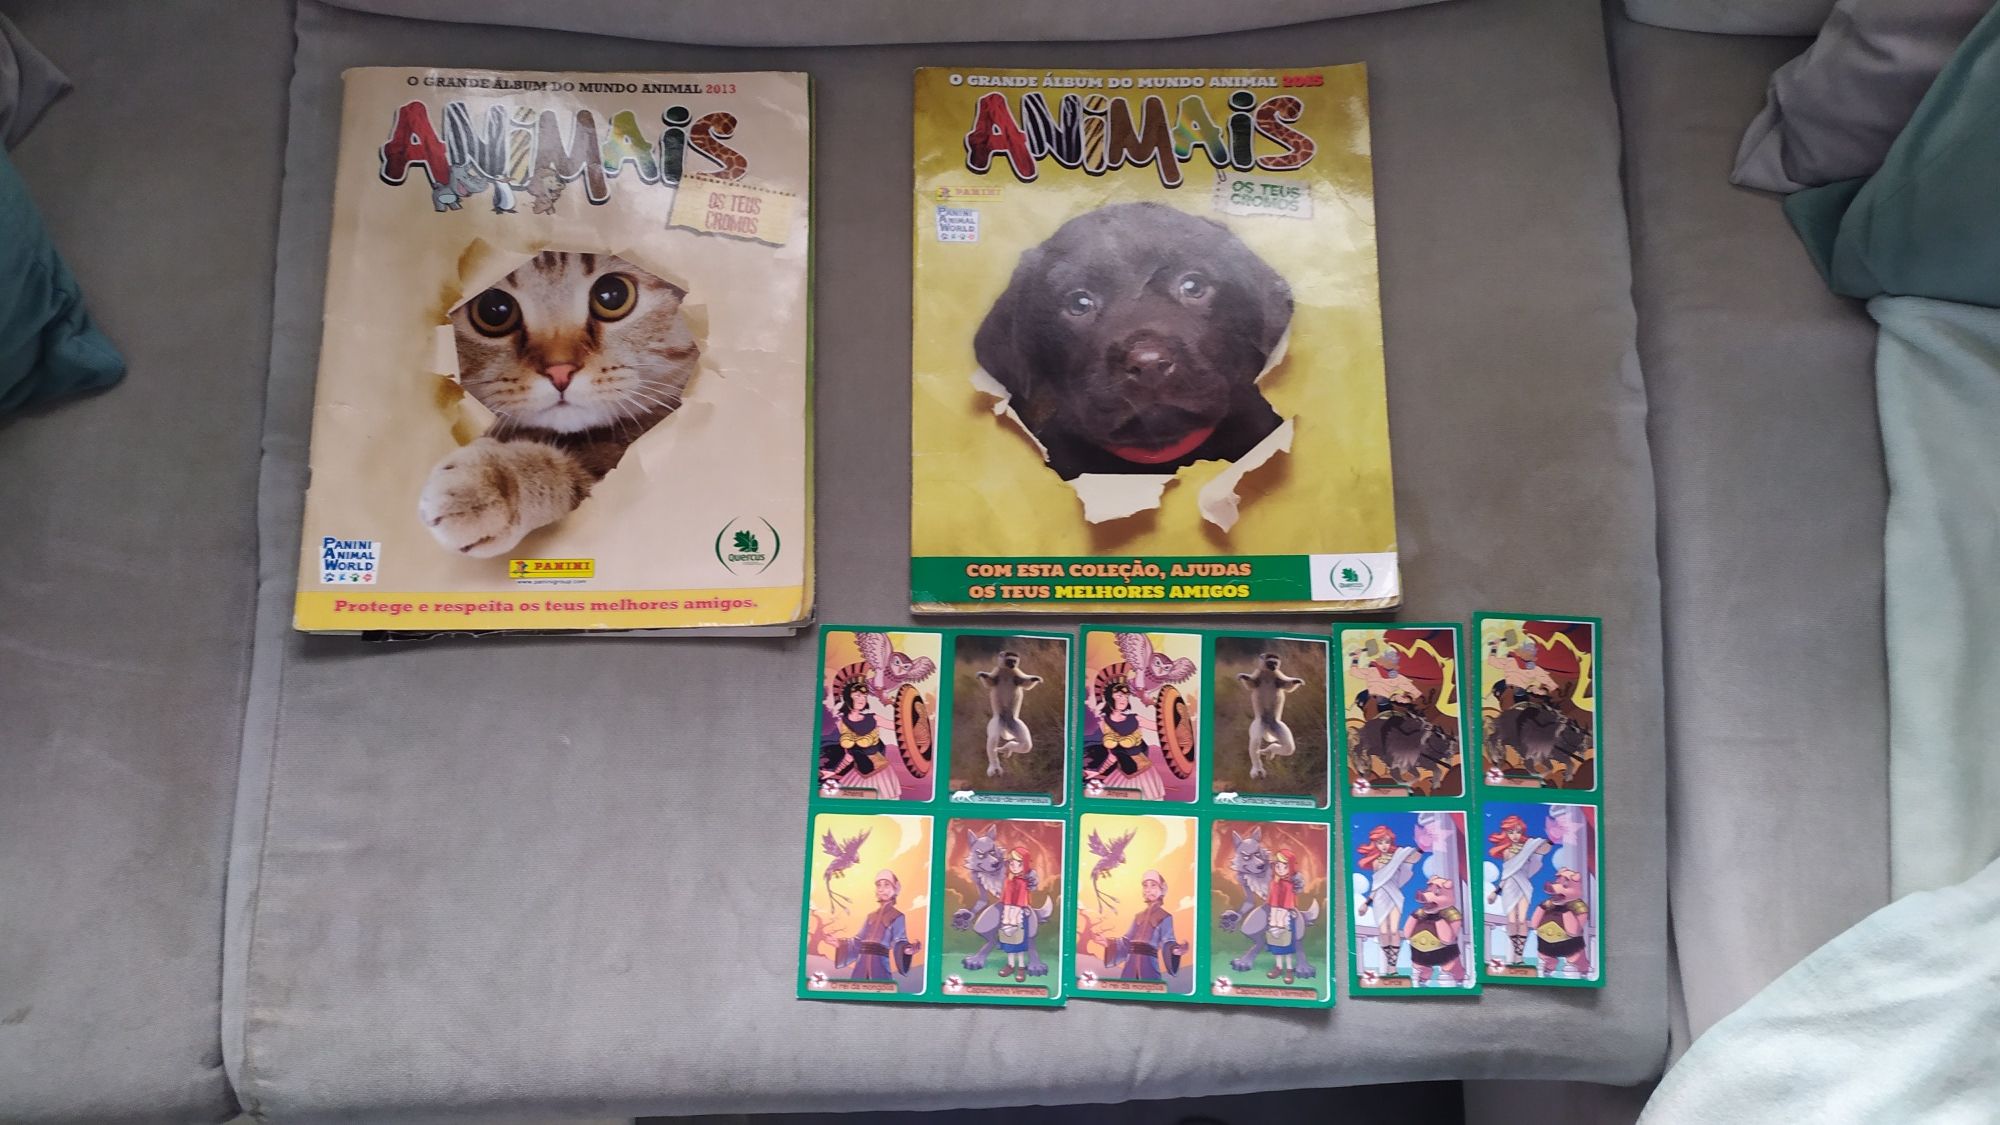 Coleções ANIMAIS o grande álbum do mundo animal 2013 e 2015